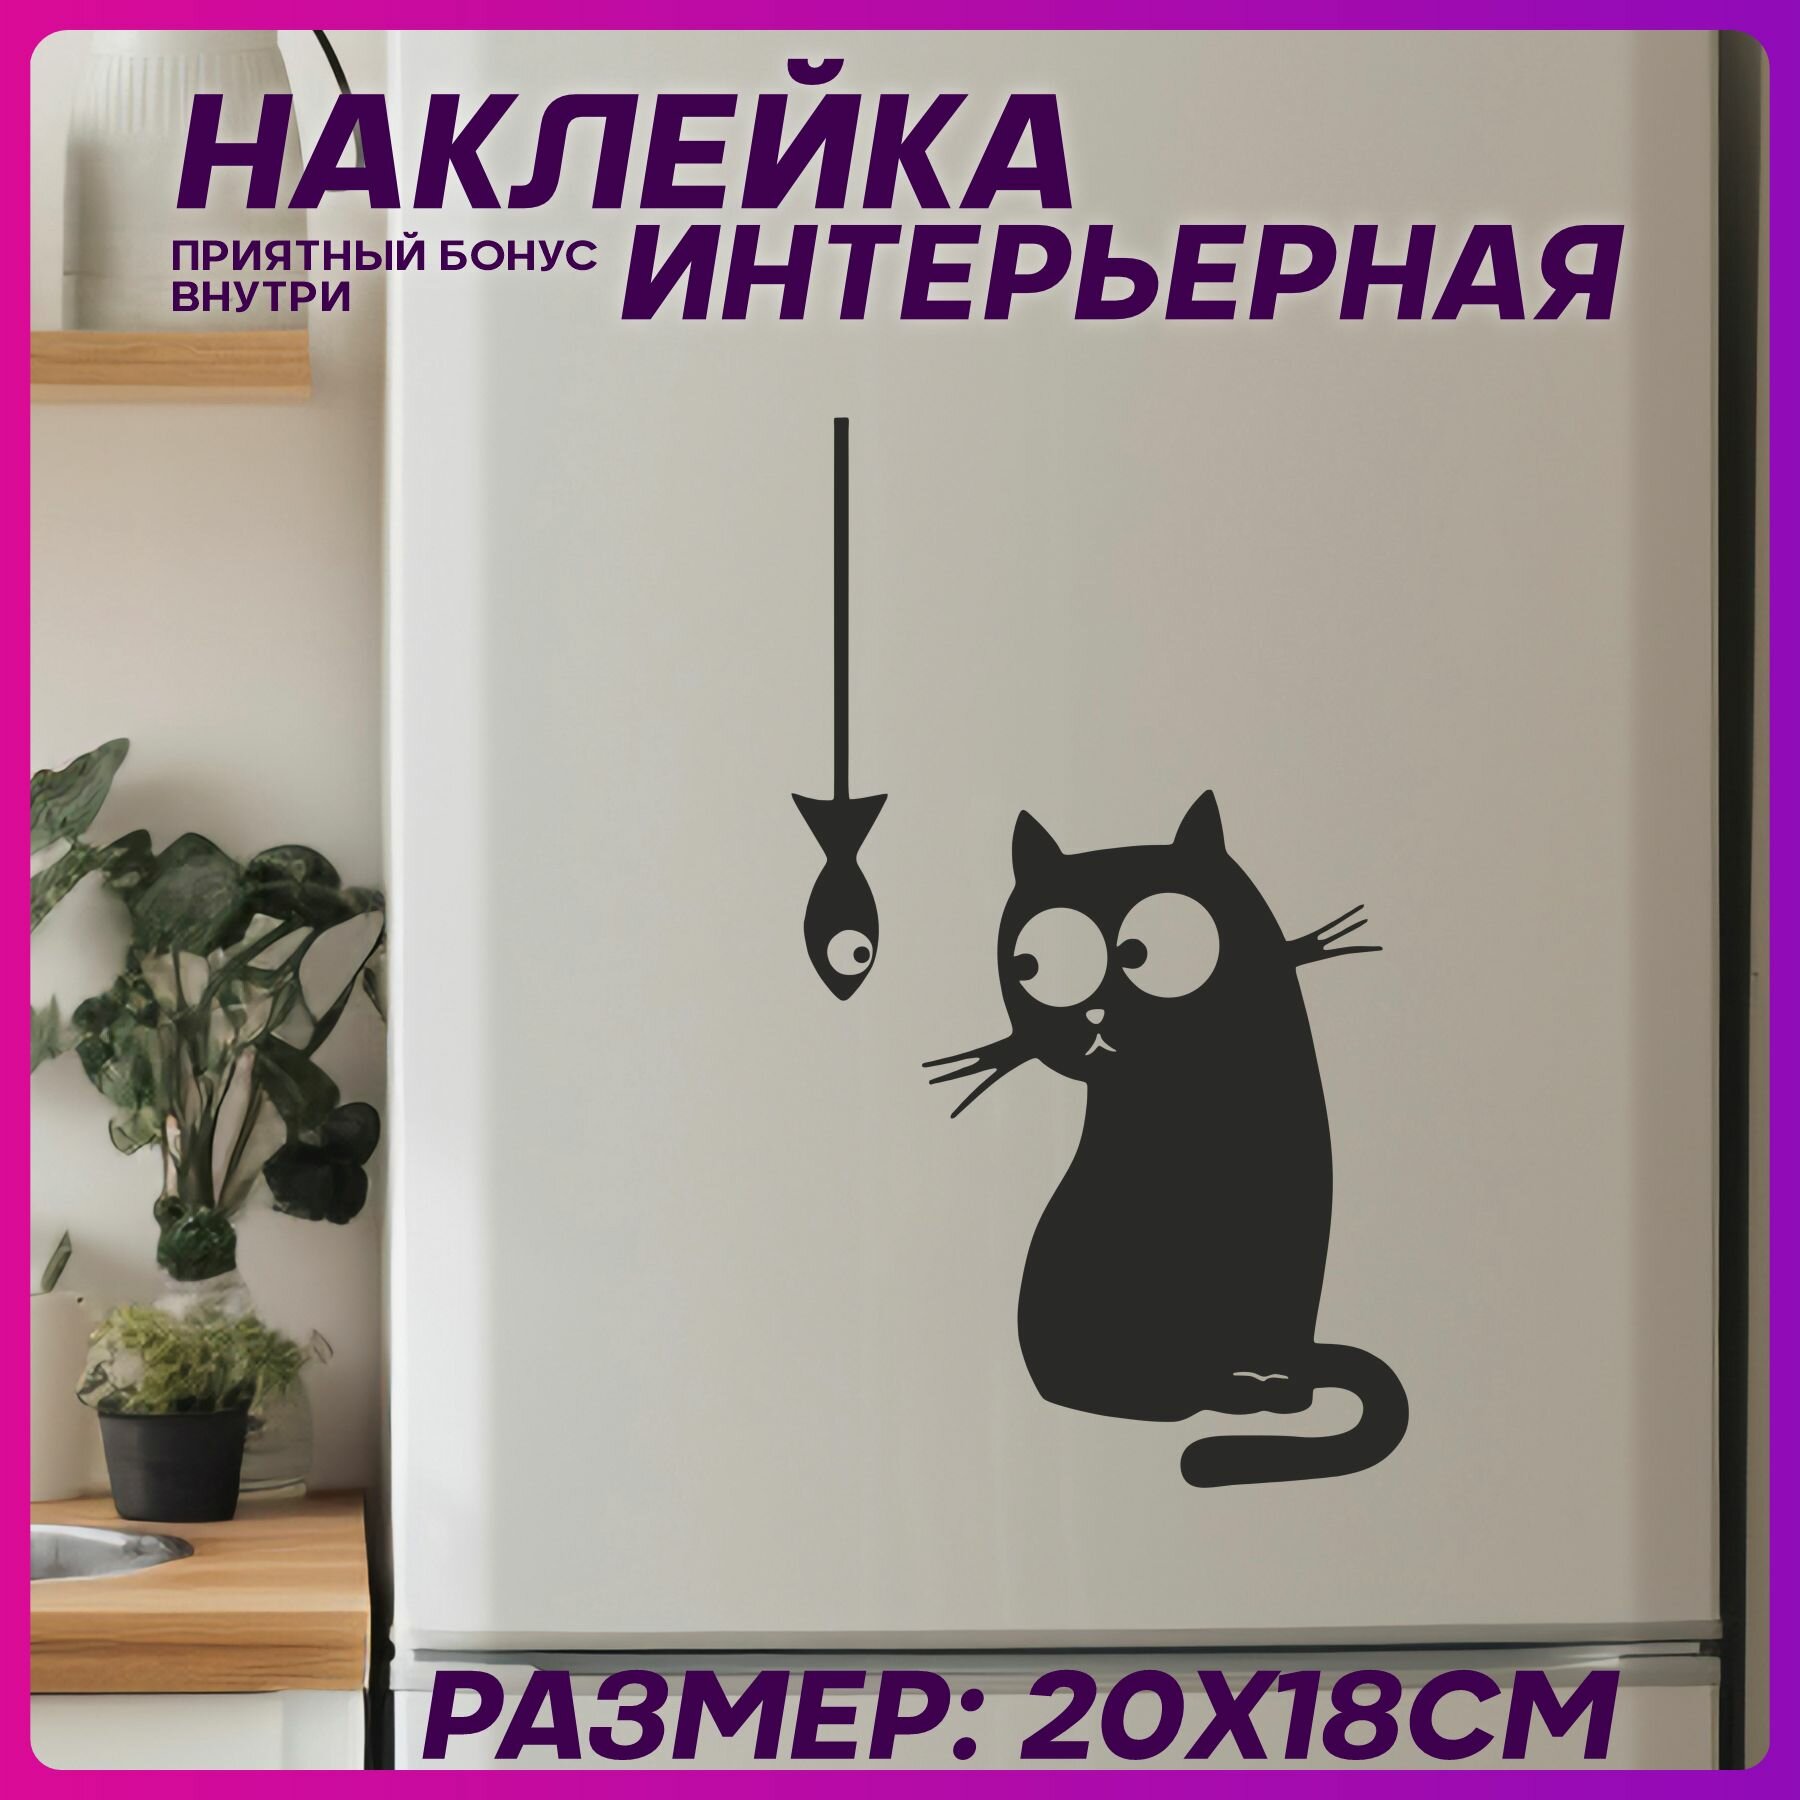 Наклейка на холодильник интерьерная Приколы кот